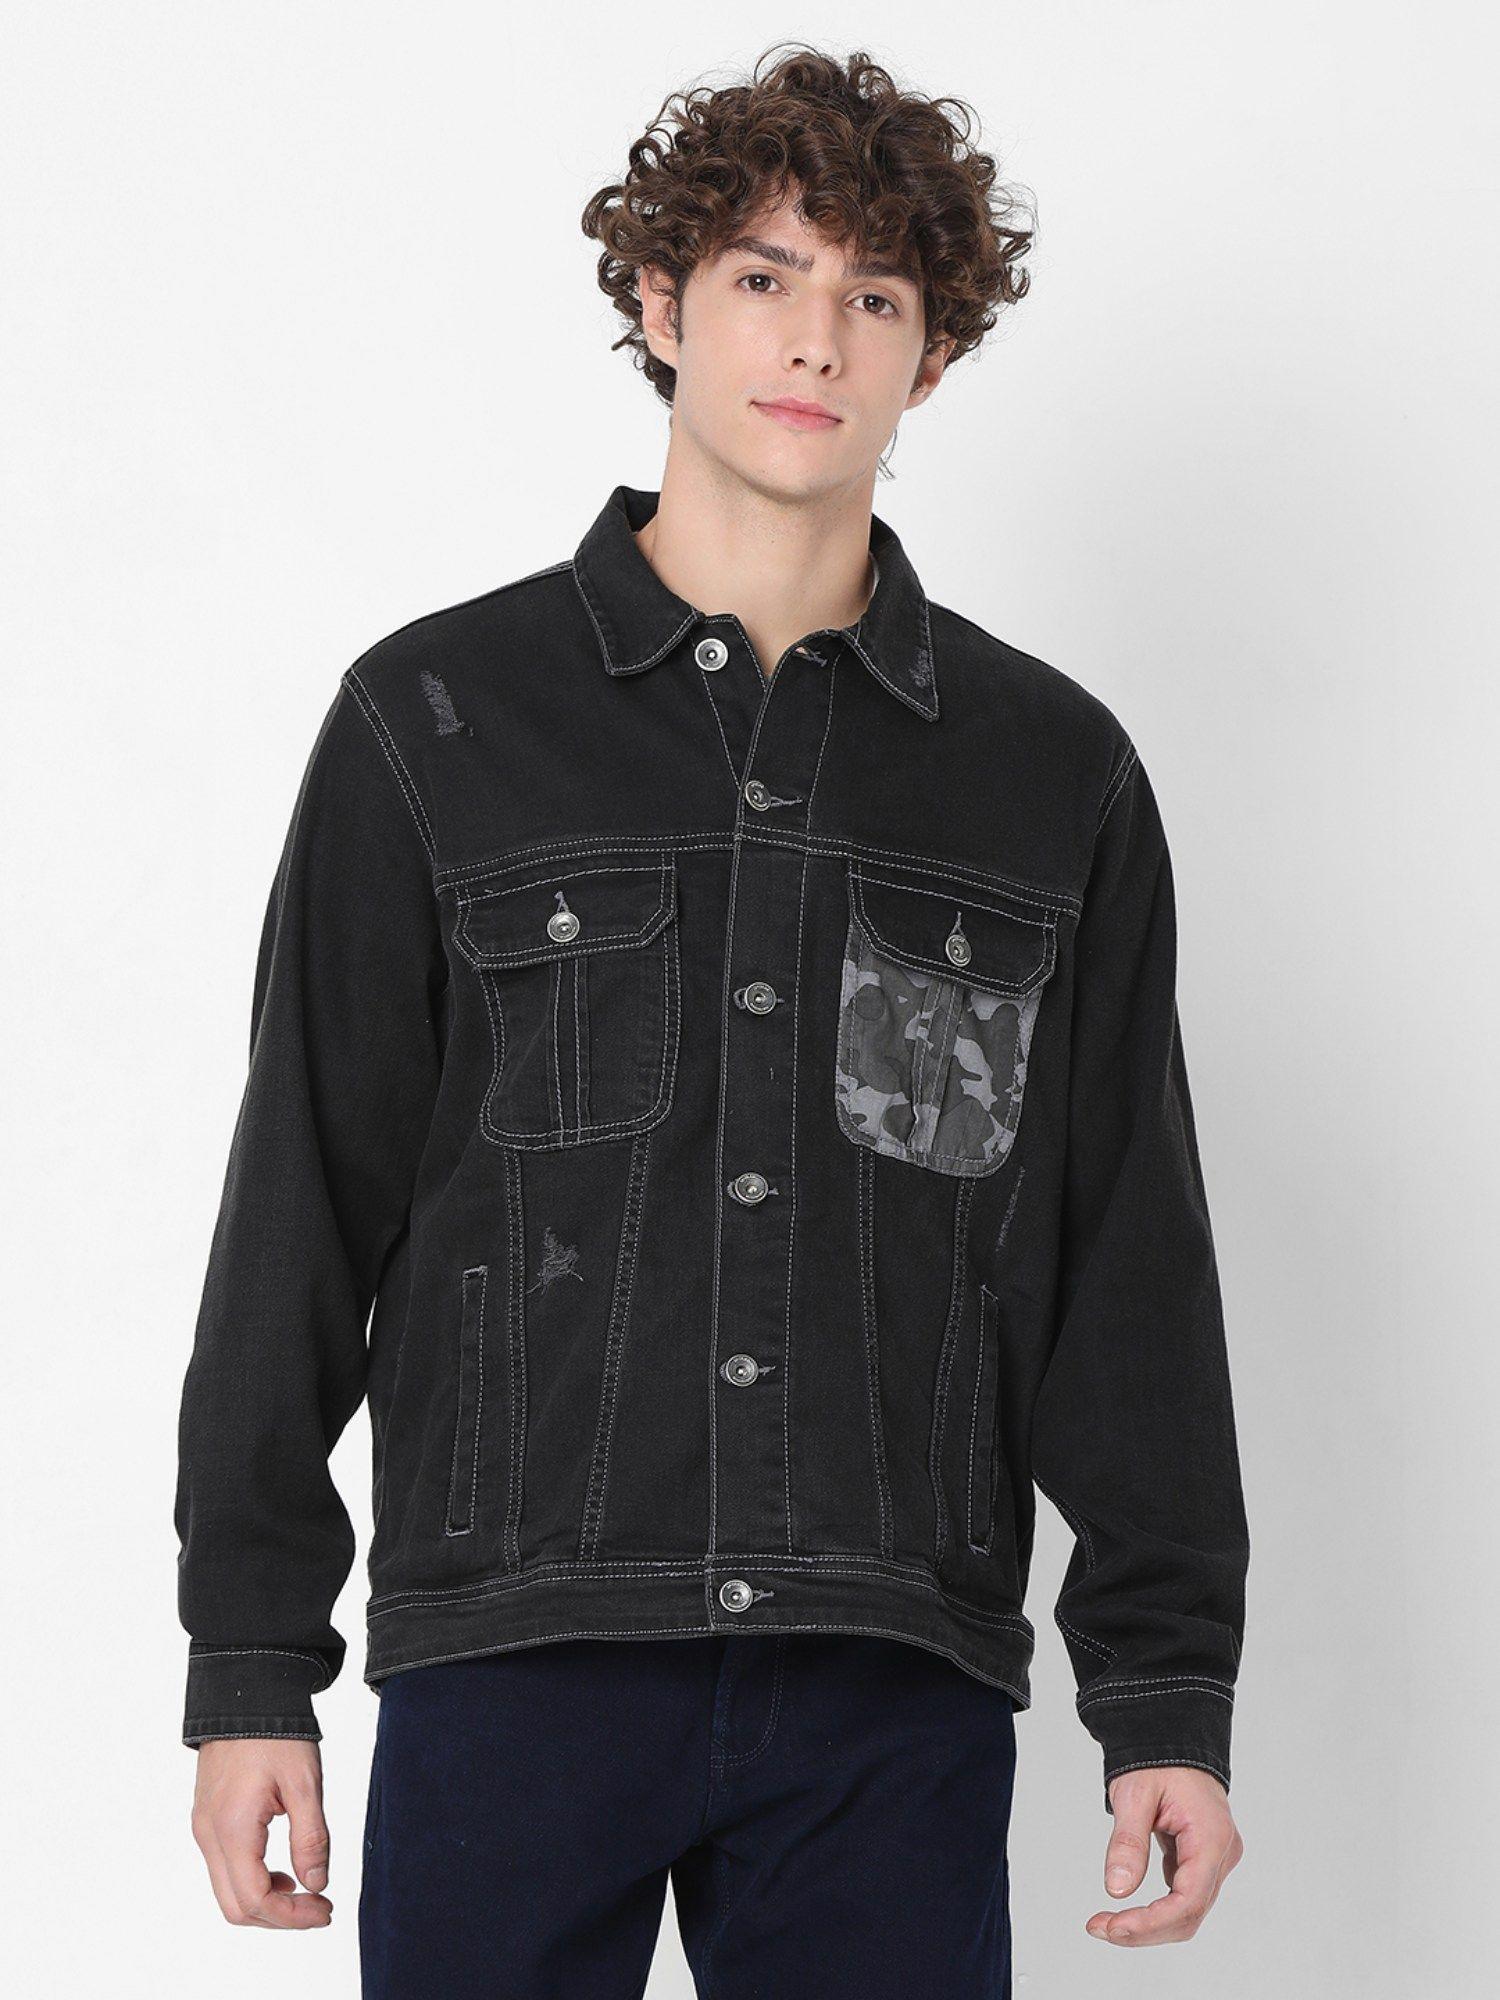 black full sleeve denim jackets for men's